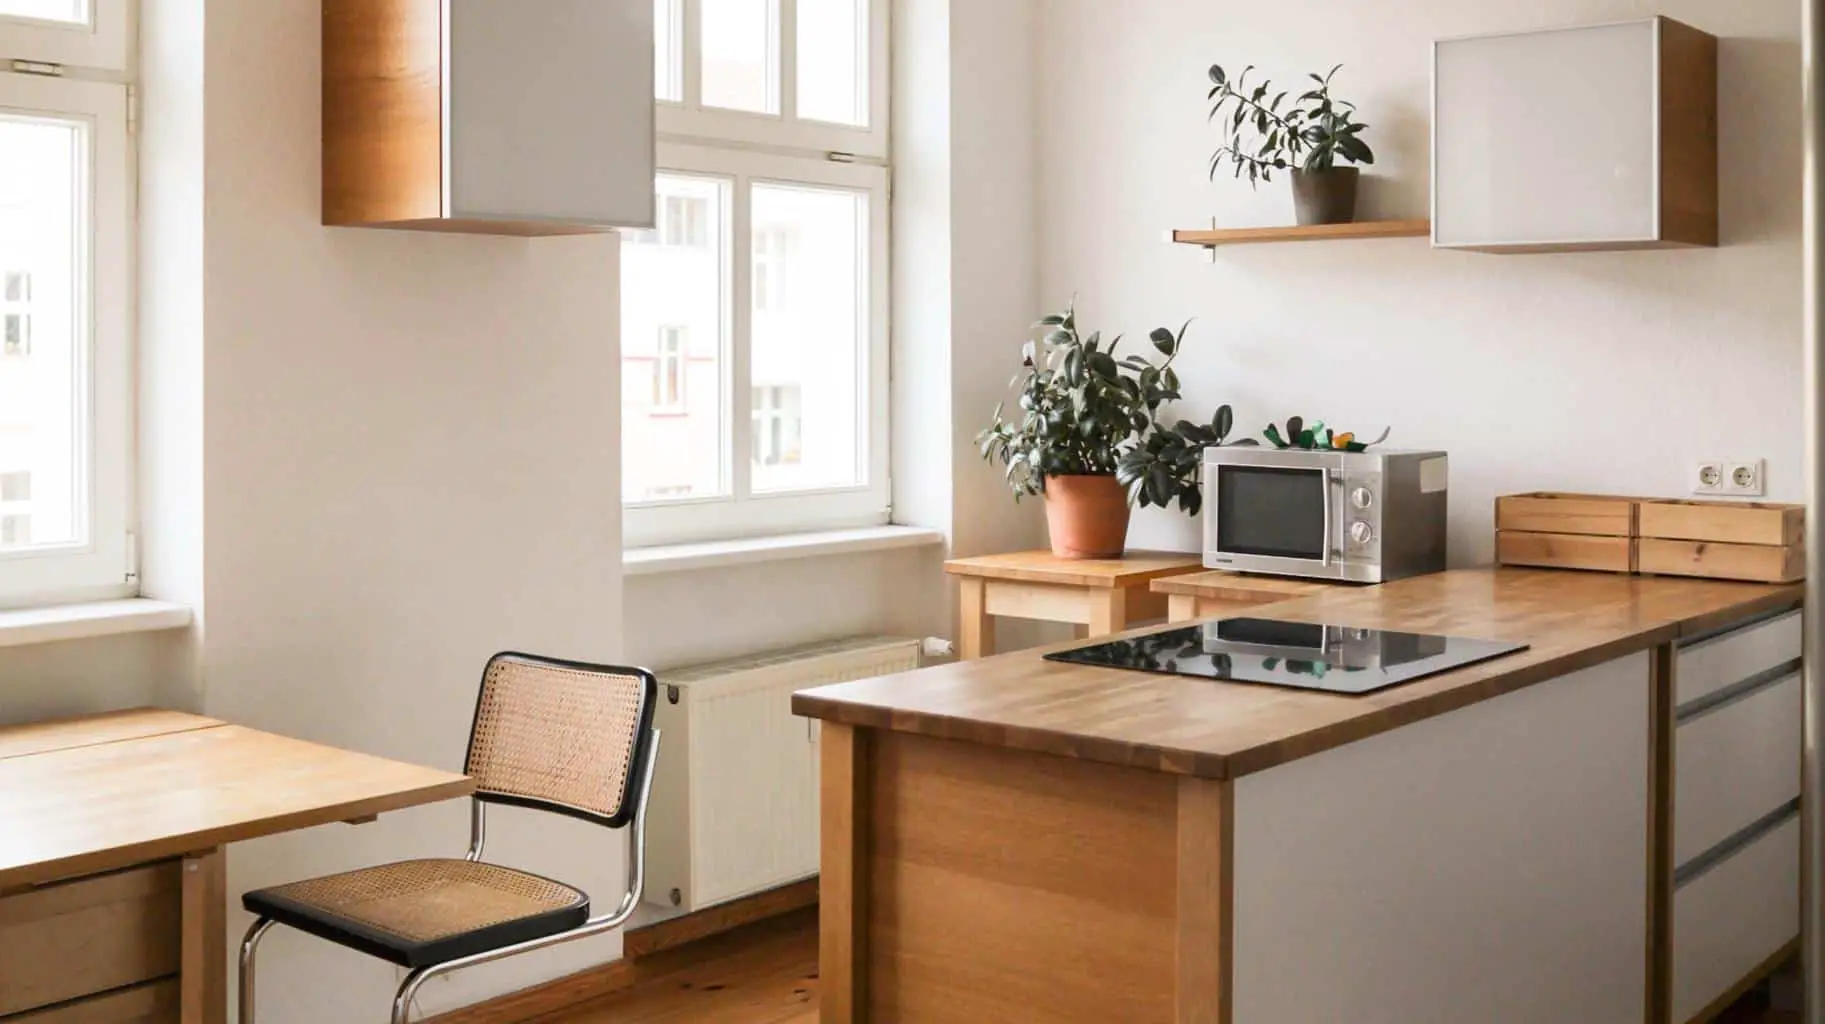 minimalist approach to kitchen design